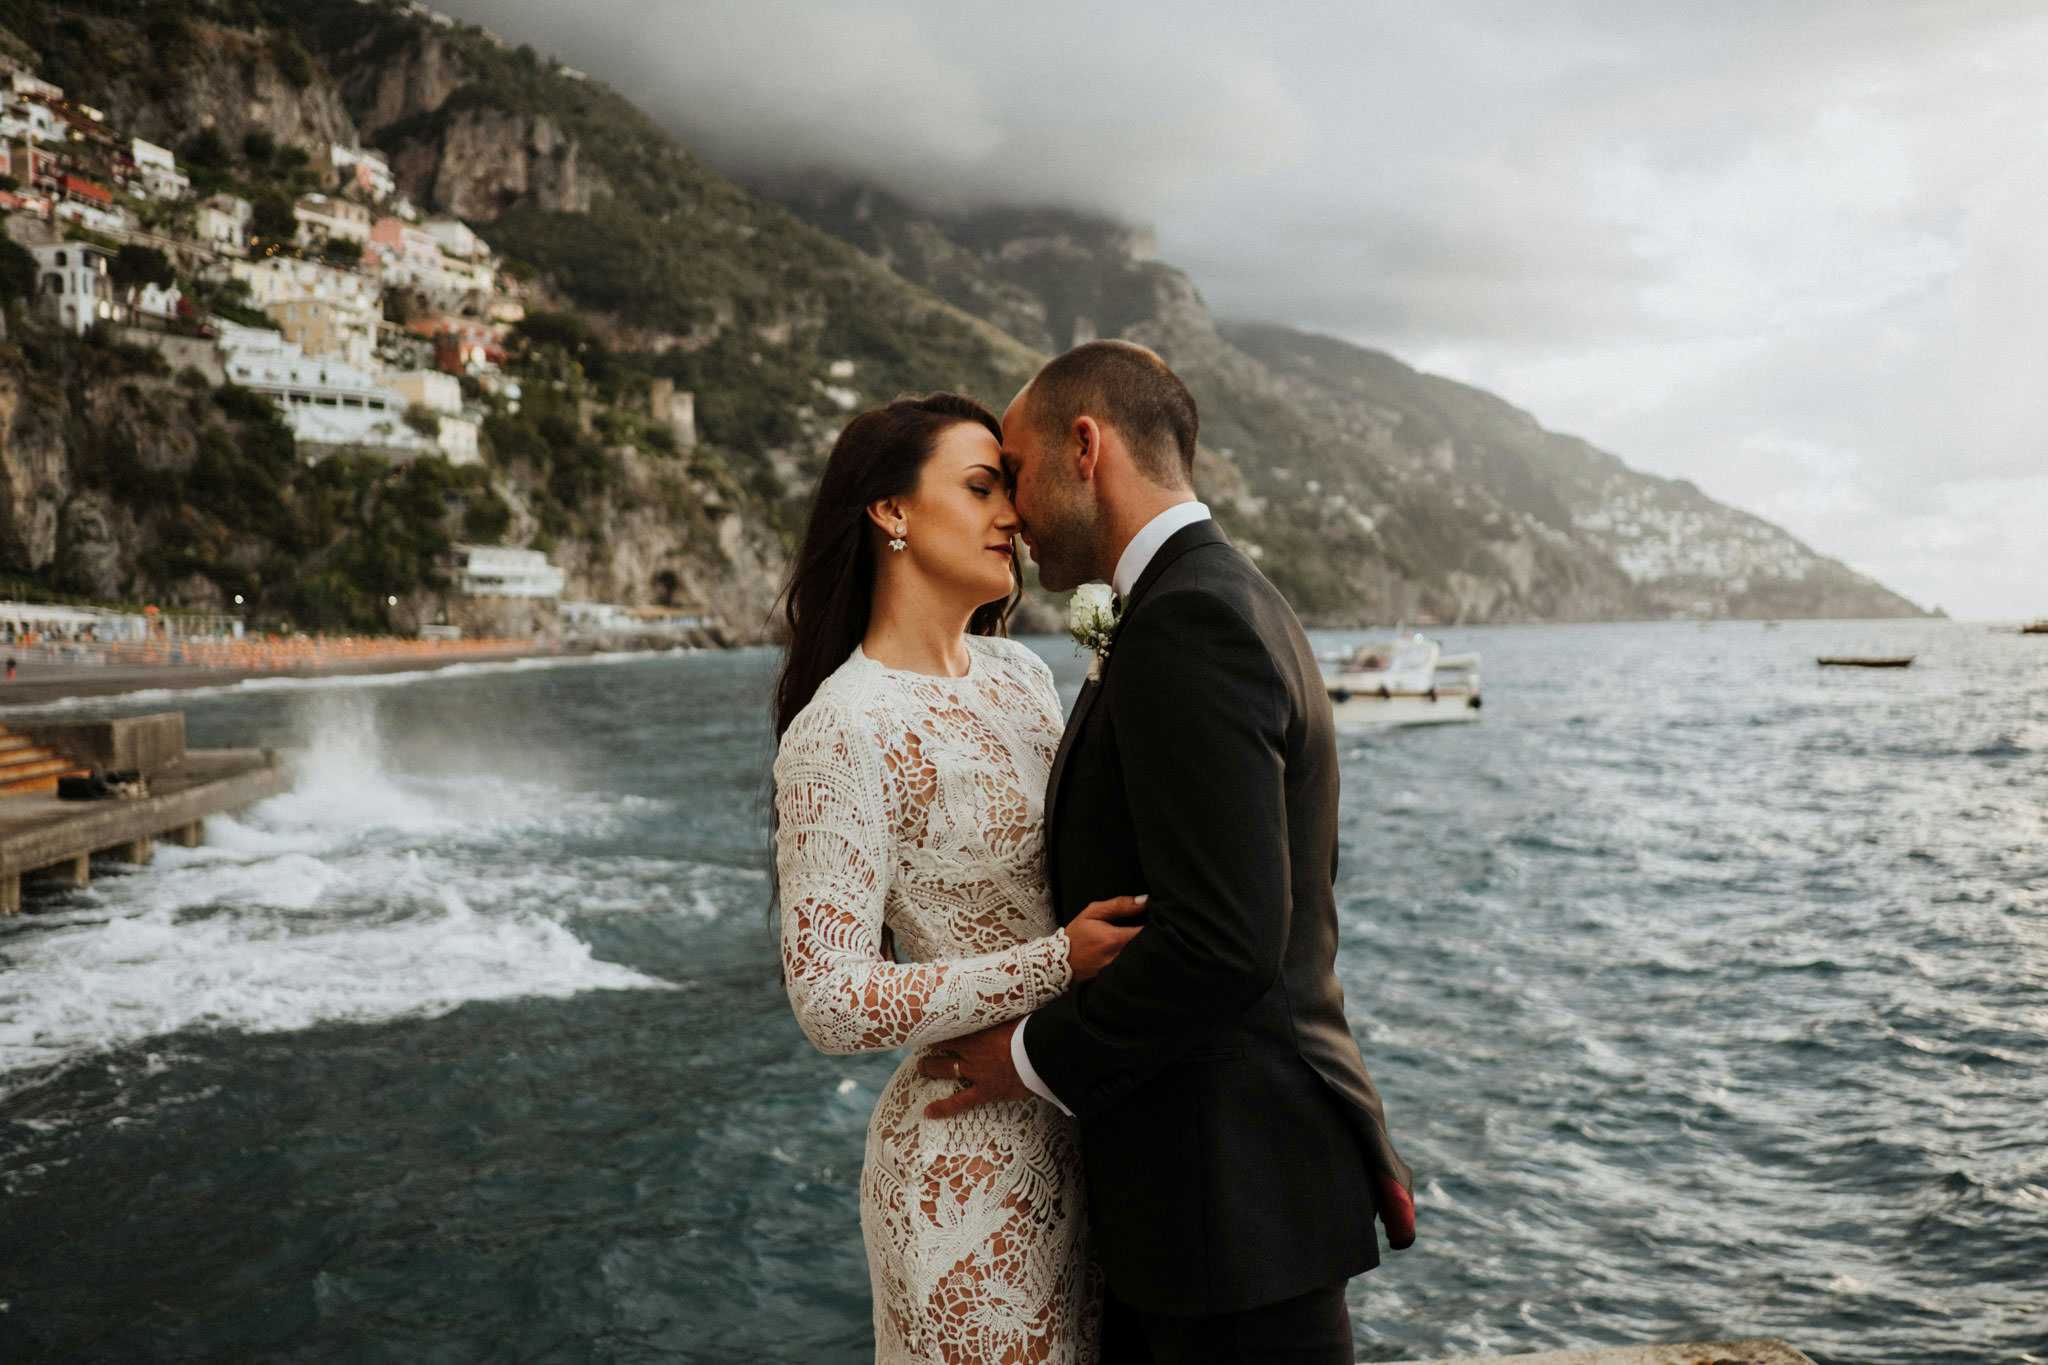 Wedding in Positano – Megan & Kyle